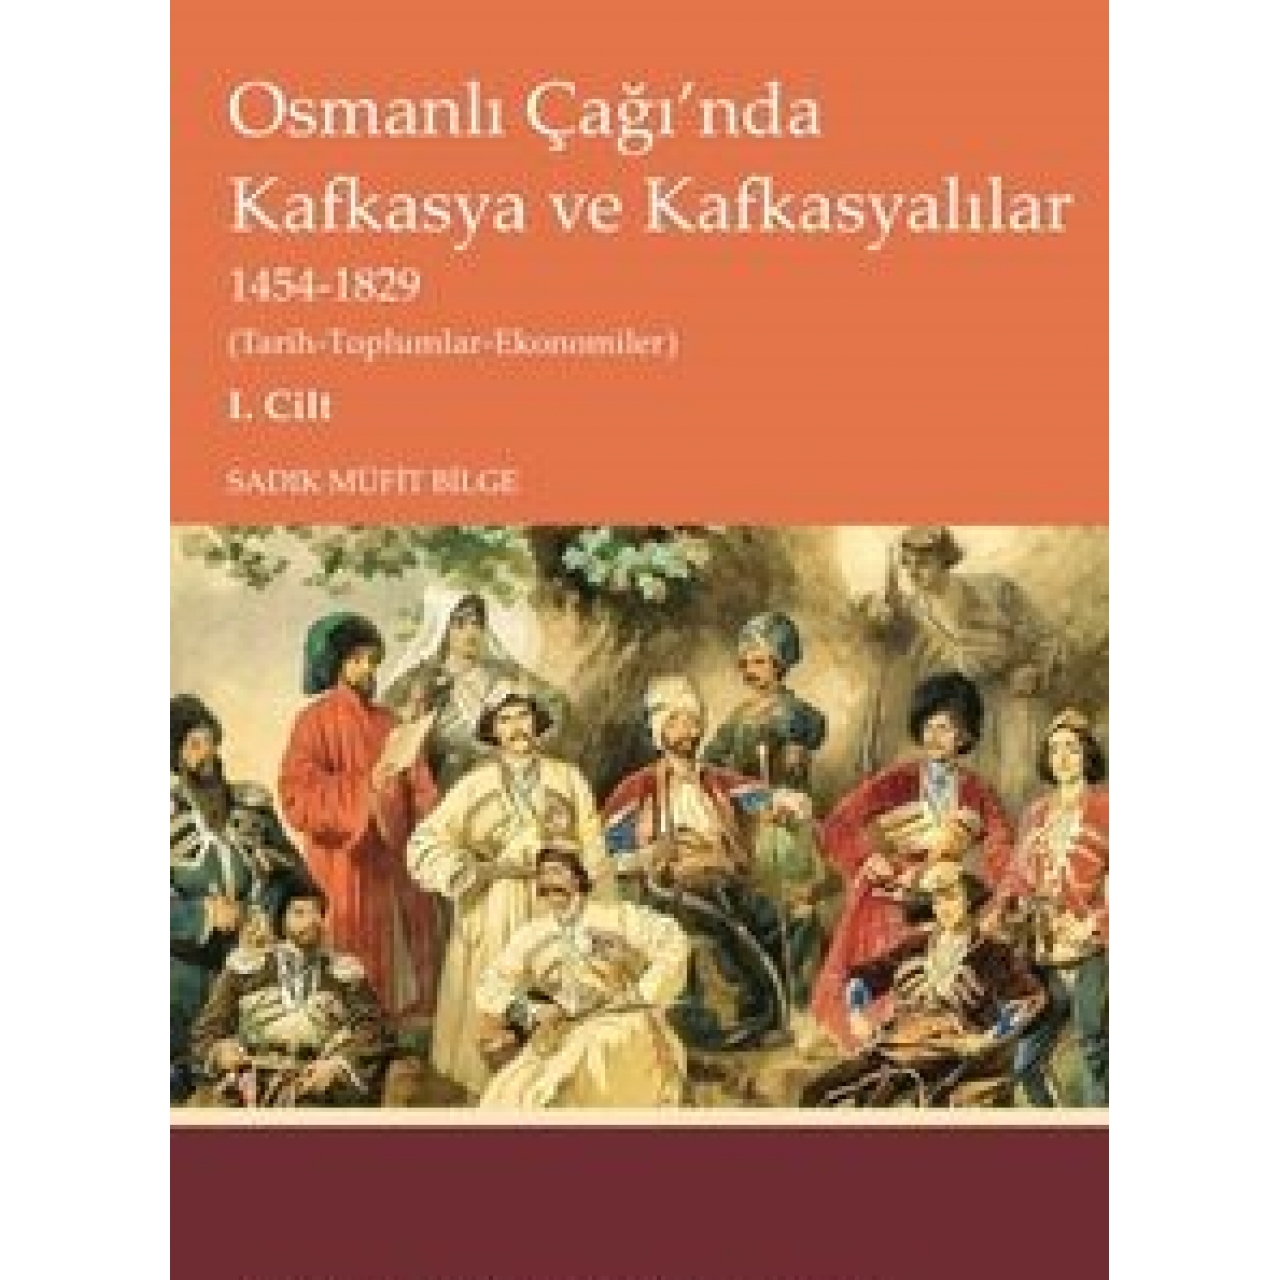 Osmanlı Çağı’nda Kafkasya ve Kafkasyalılar 1454-1829 (Tarih-Toplumlar-Ekonomiler) I. Cilt